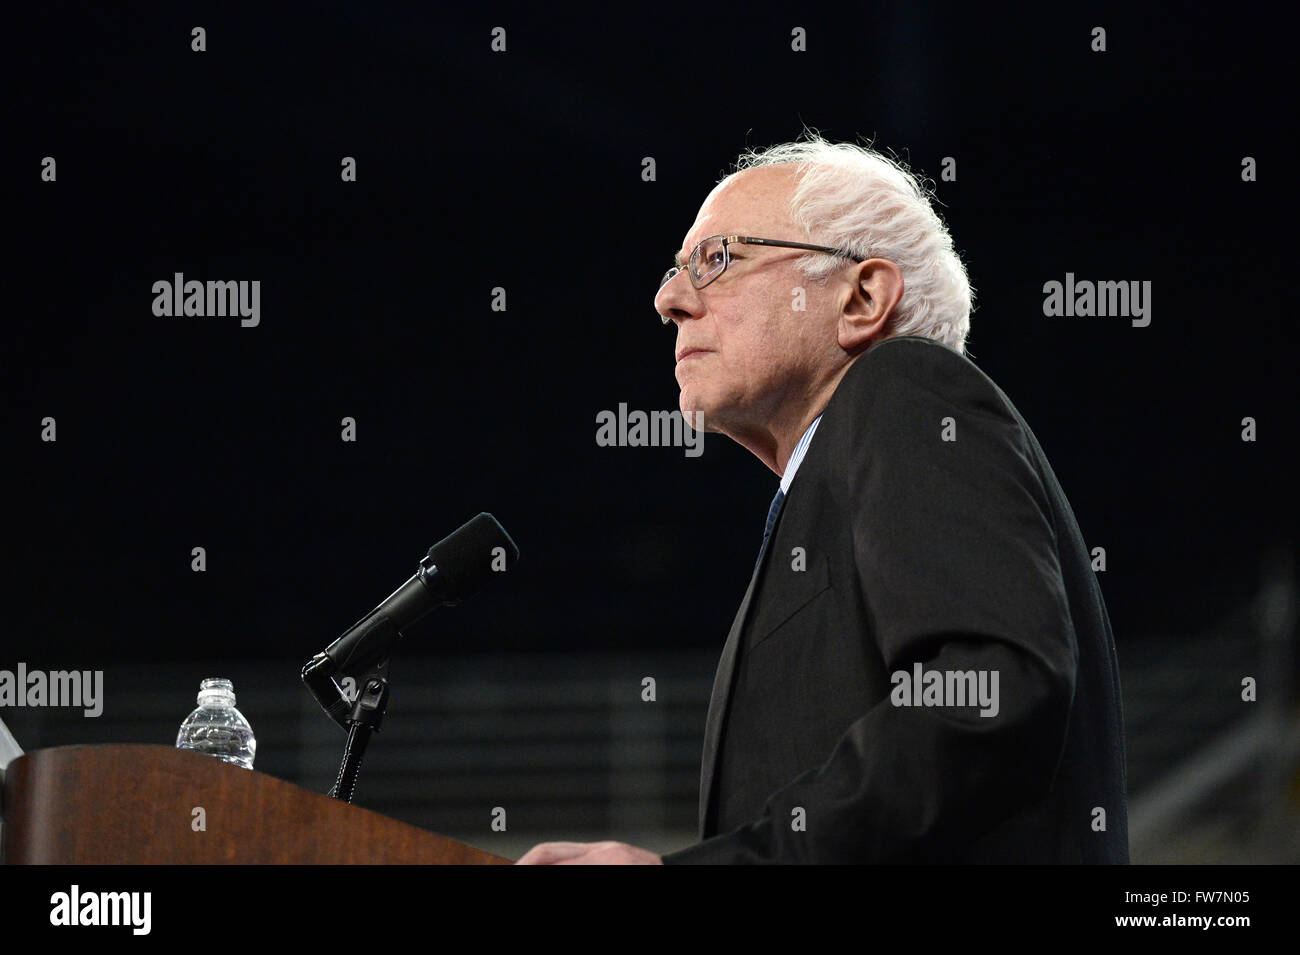 Saint Charles, MO, USA - Le 14 mars 2016 : Le sénateur et le candidat démocrate Bernie Sanders parle au rallye. Banque D'Images